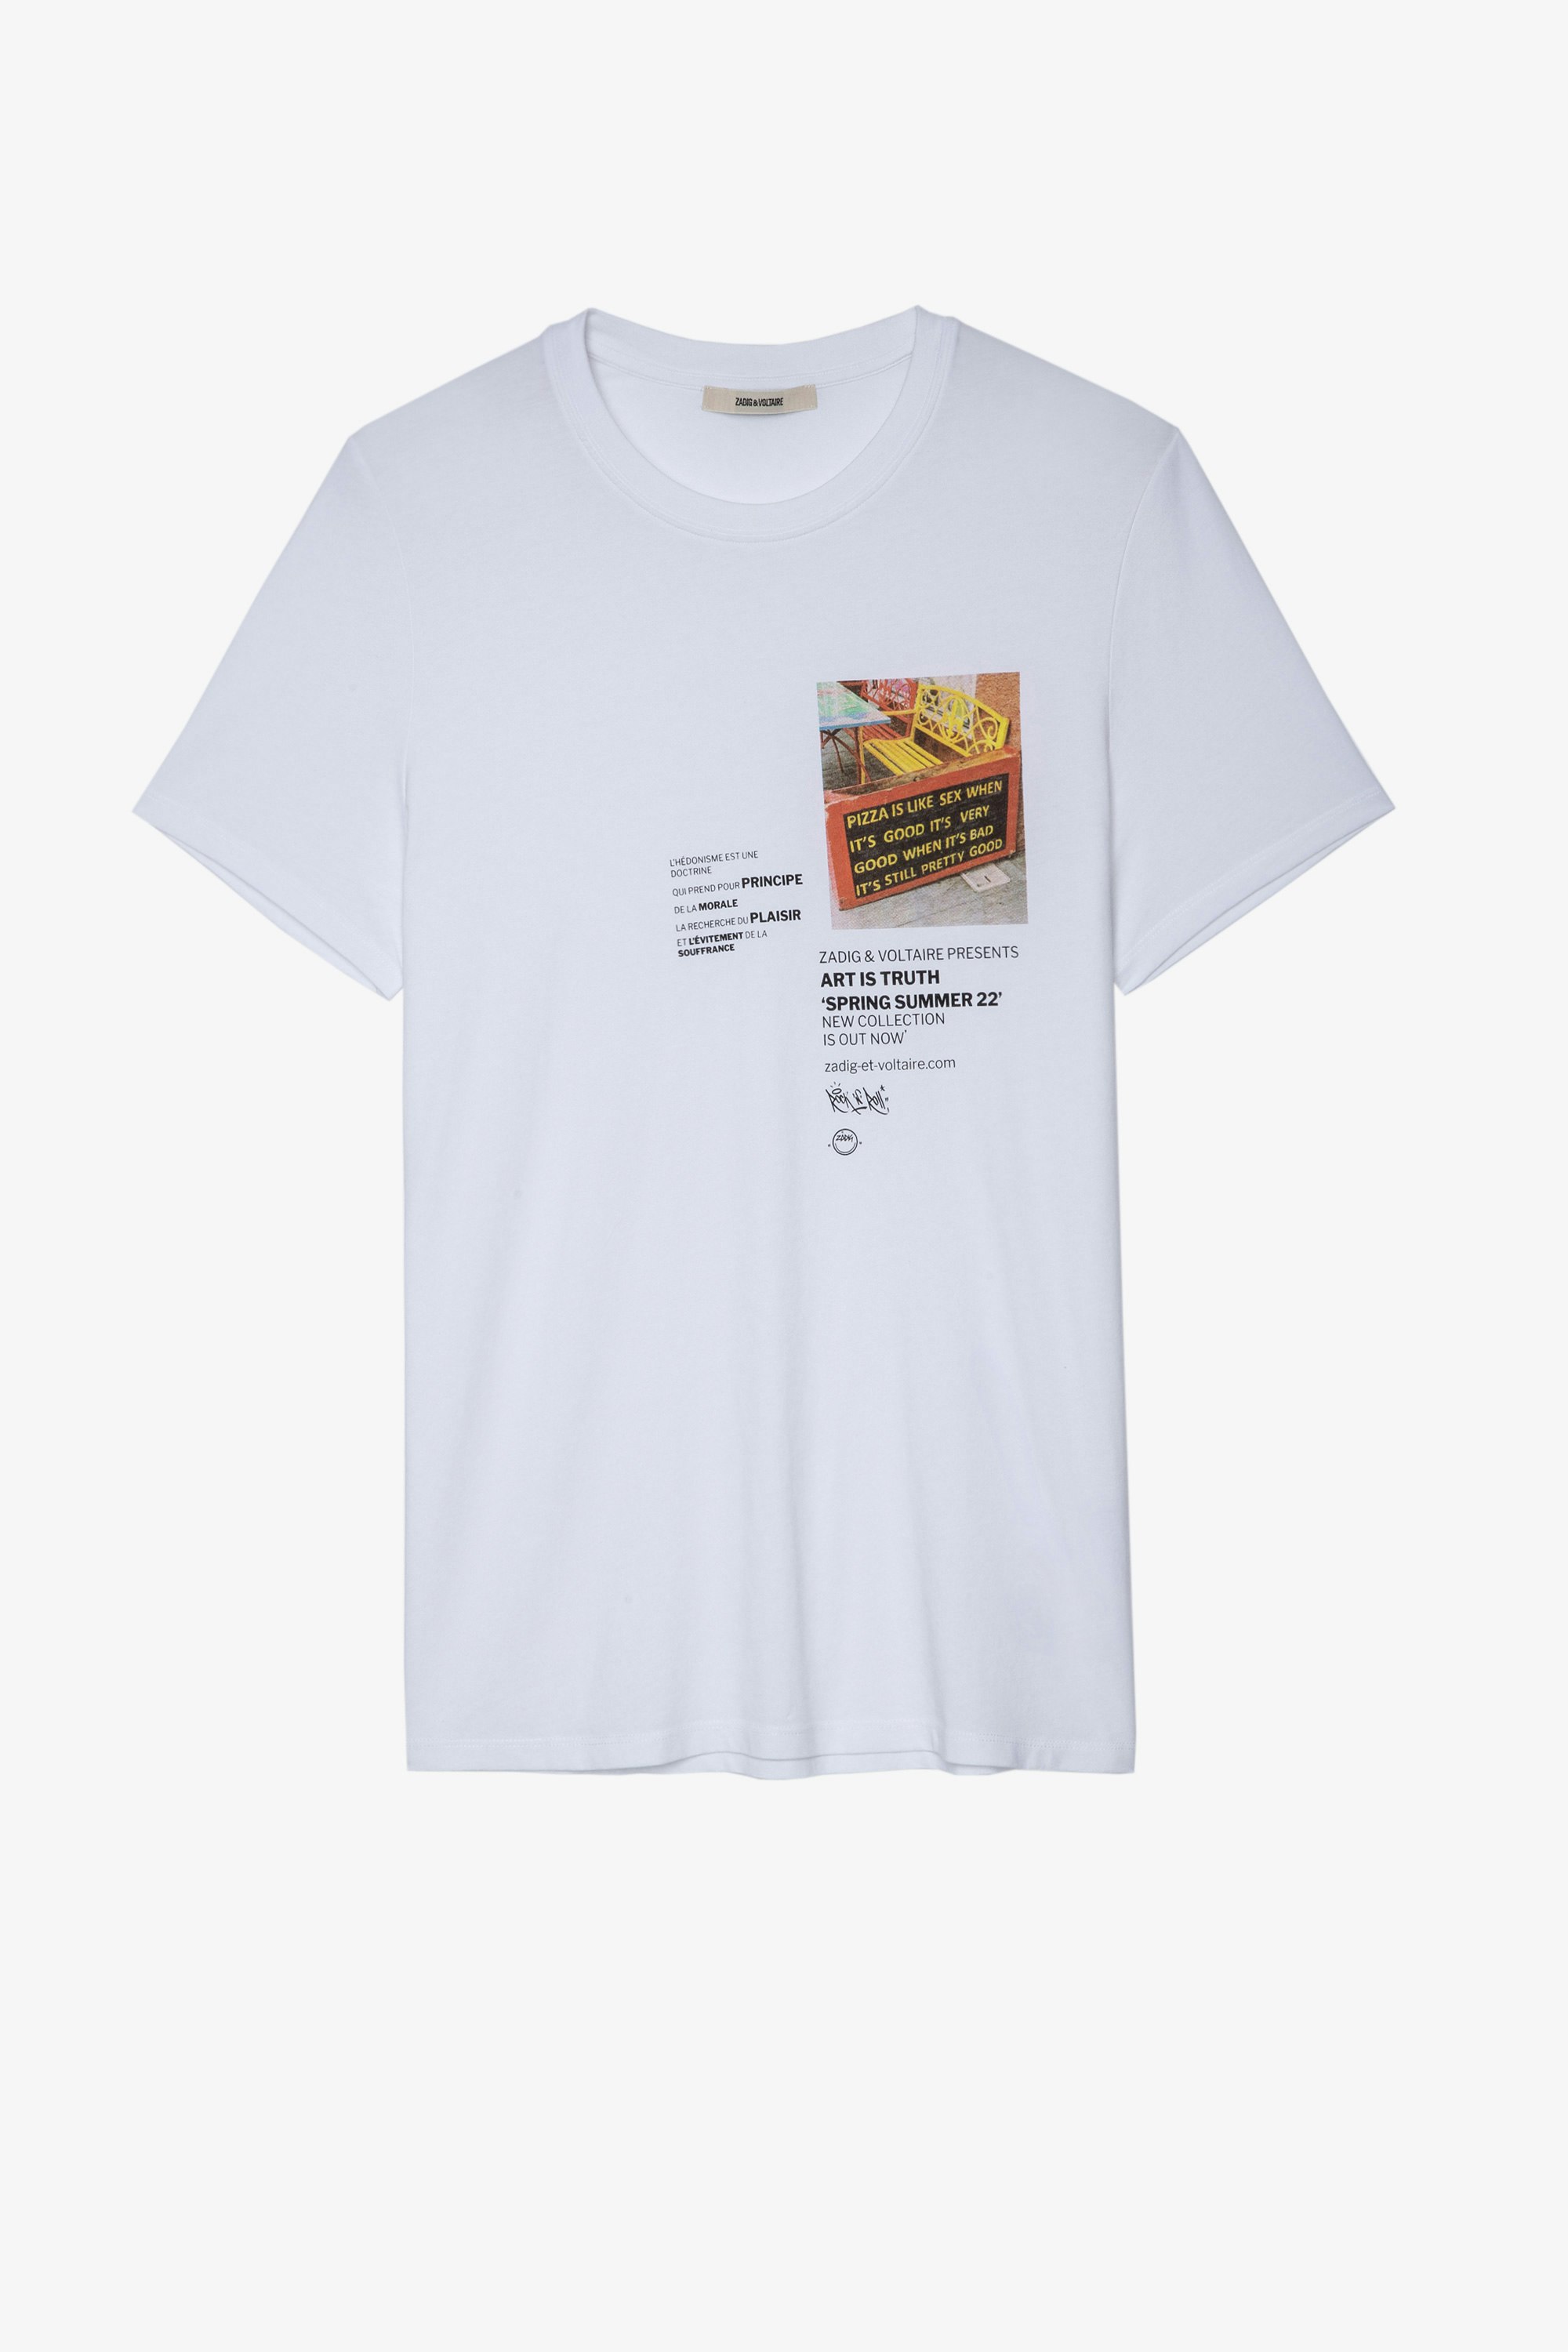 T-shirt Ted T-shirt a maniche corte in cotone bianco con stampa testo e foto uomo